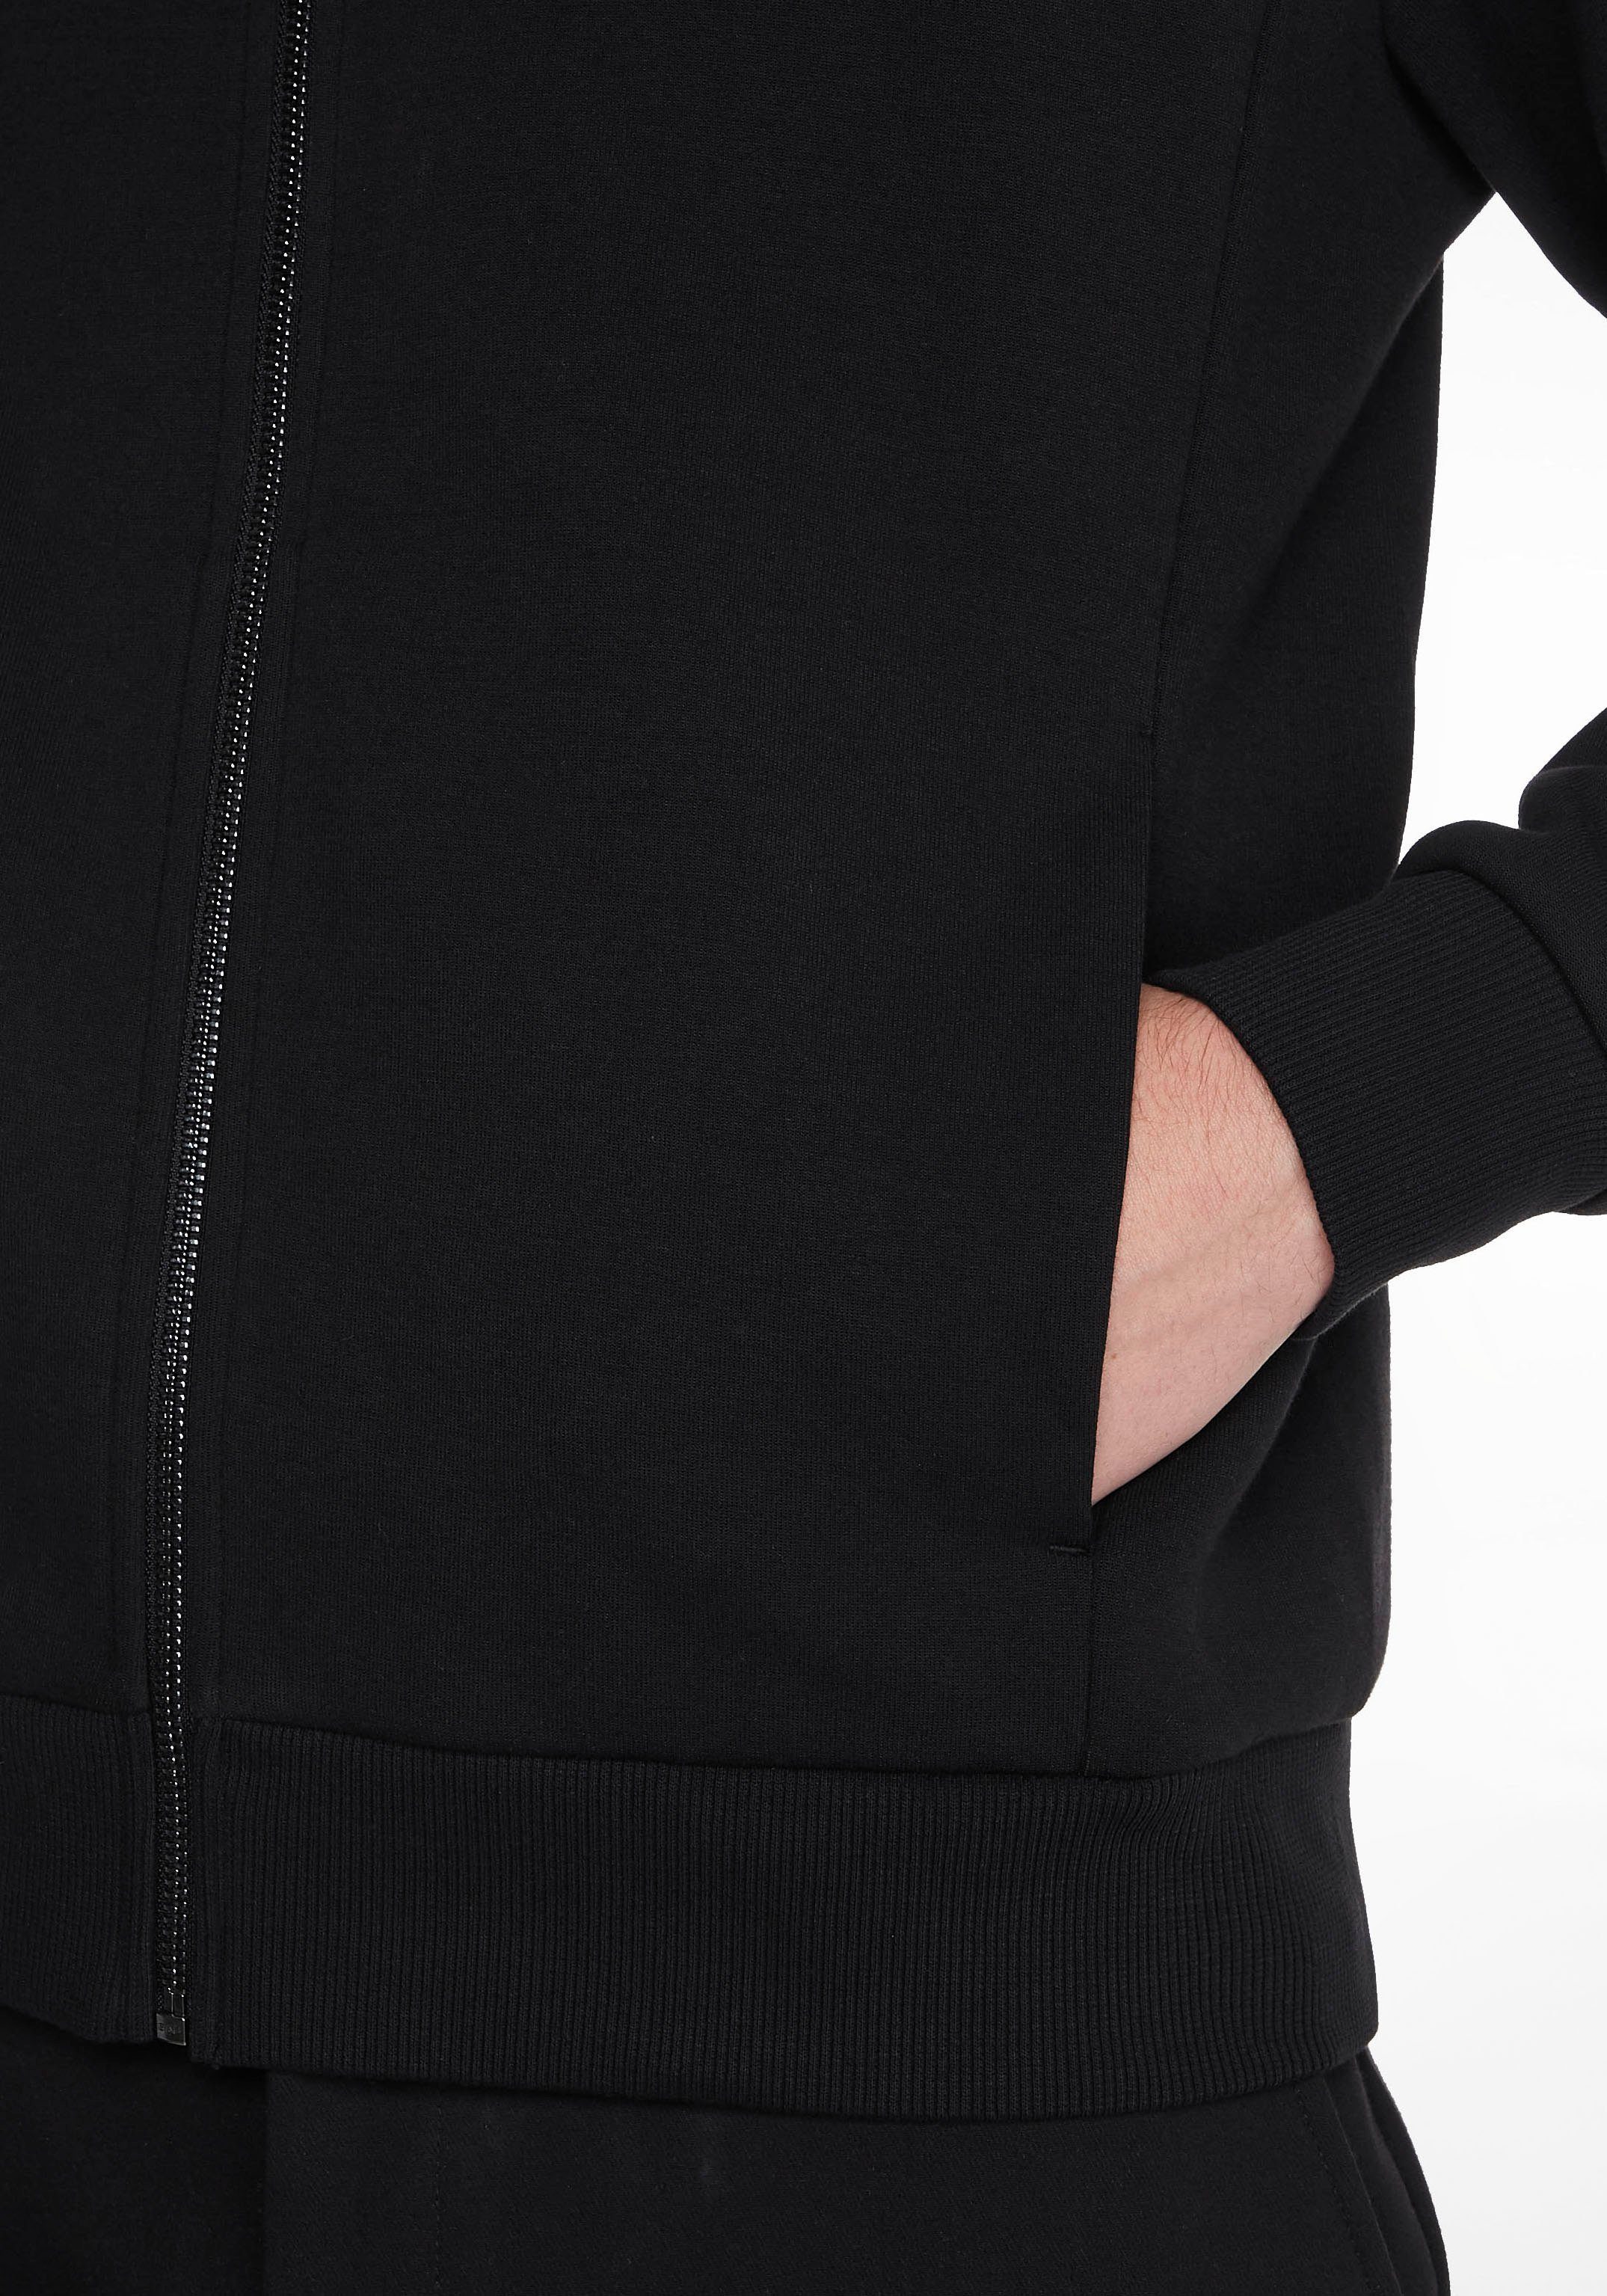 Kapuzensweatjacke mit Kapuze im Calvin schwarz Klein Design hochgeschlossenen